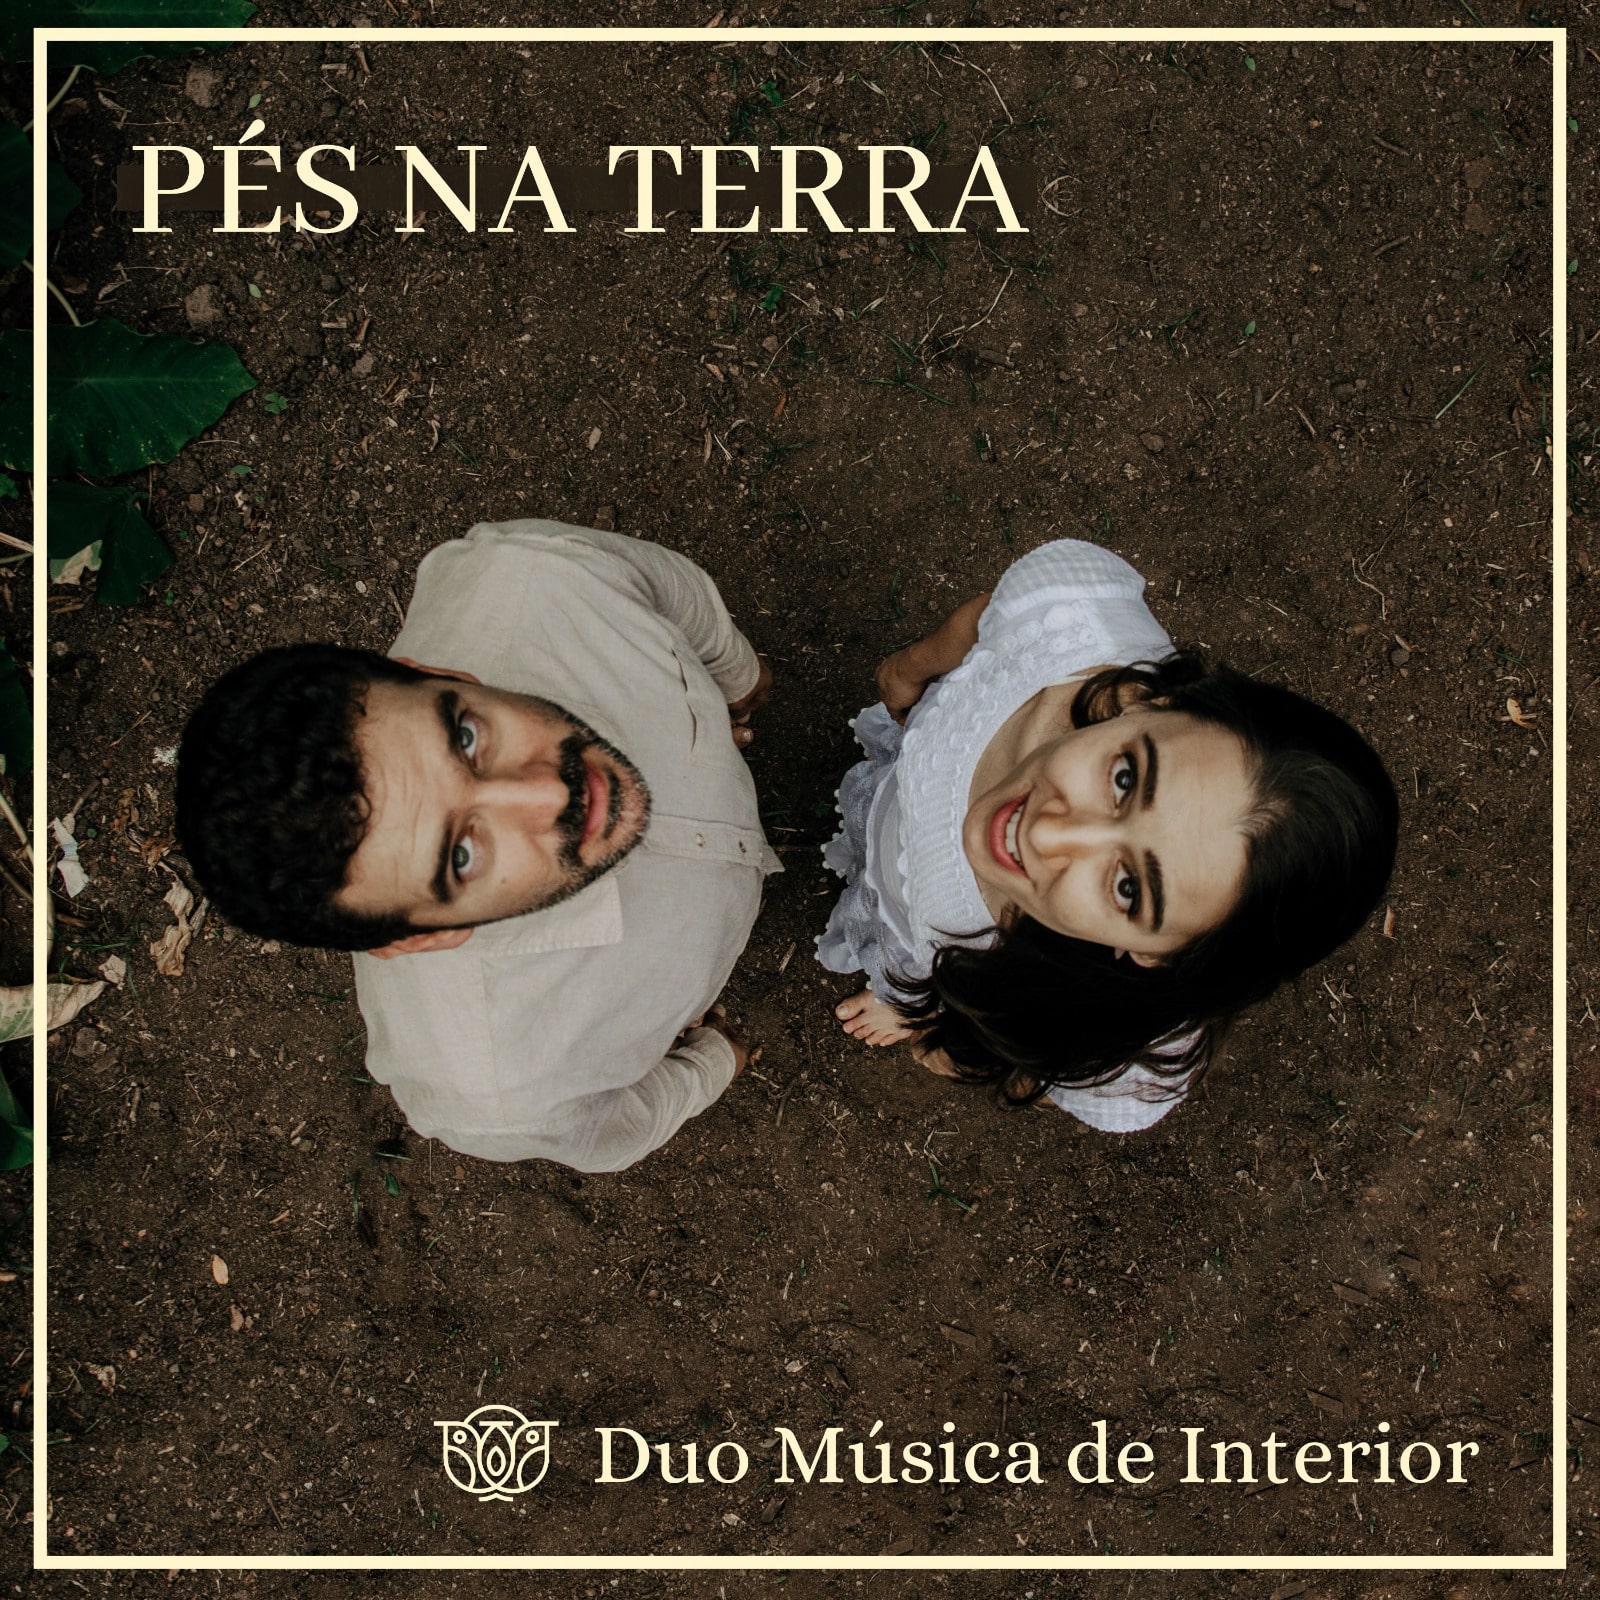 revistaprosaversoearte.com - Duo Música de Interior lança o novo álbum 'Pés na Terra'